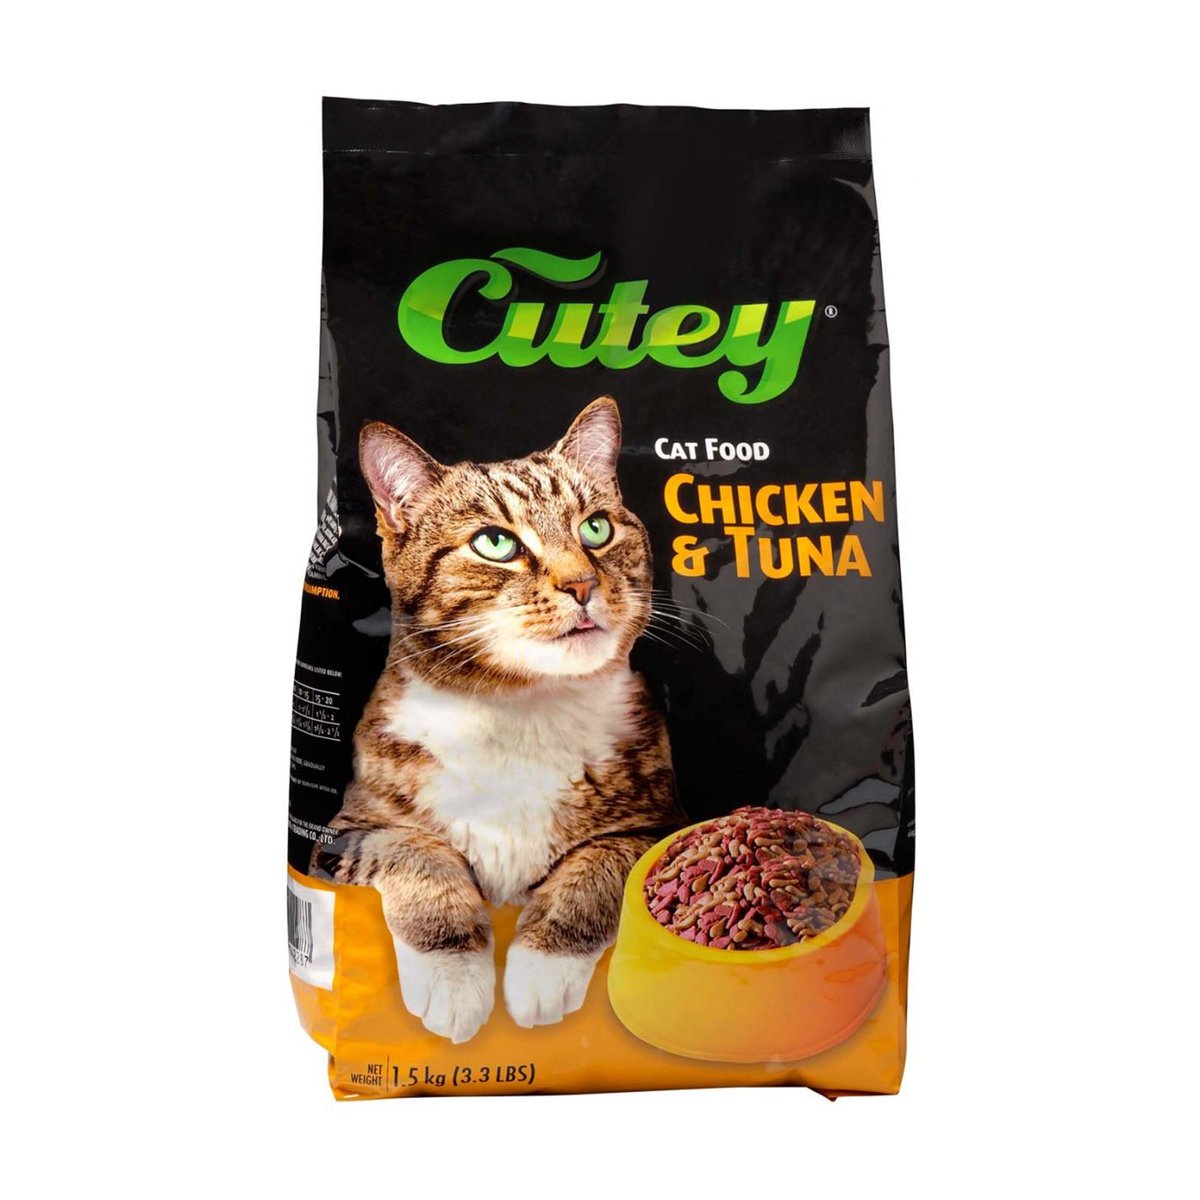 Cutey Cat Food Chicken & Tuna 1.5kg Online at Best Price | Cat Food ...